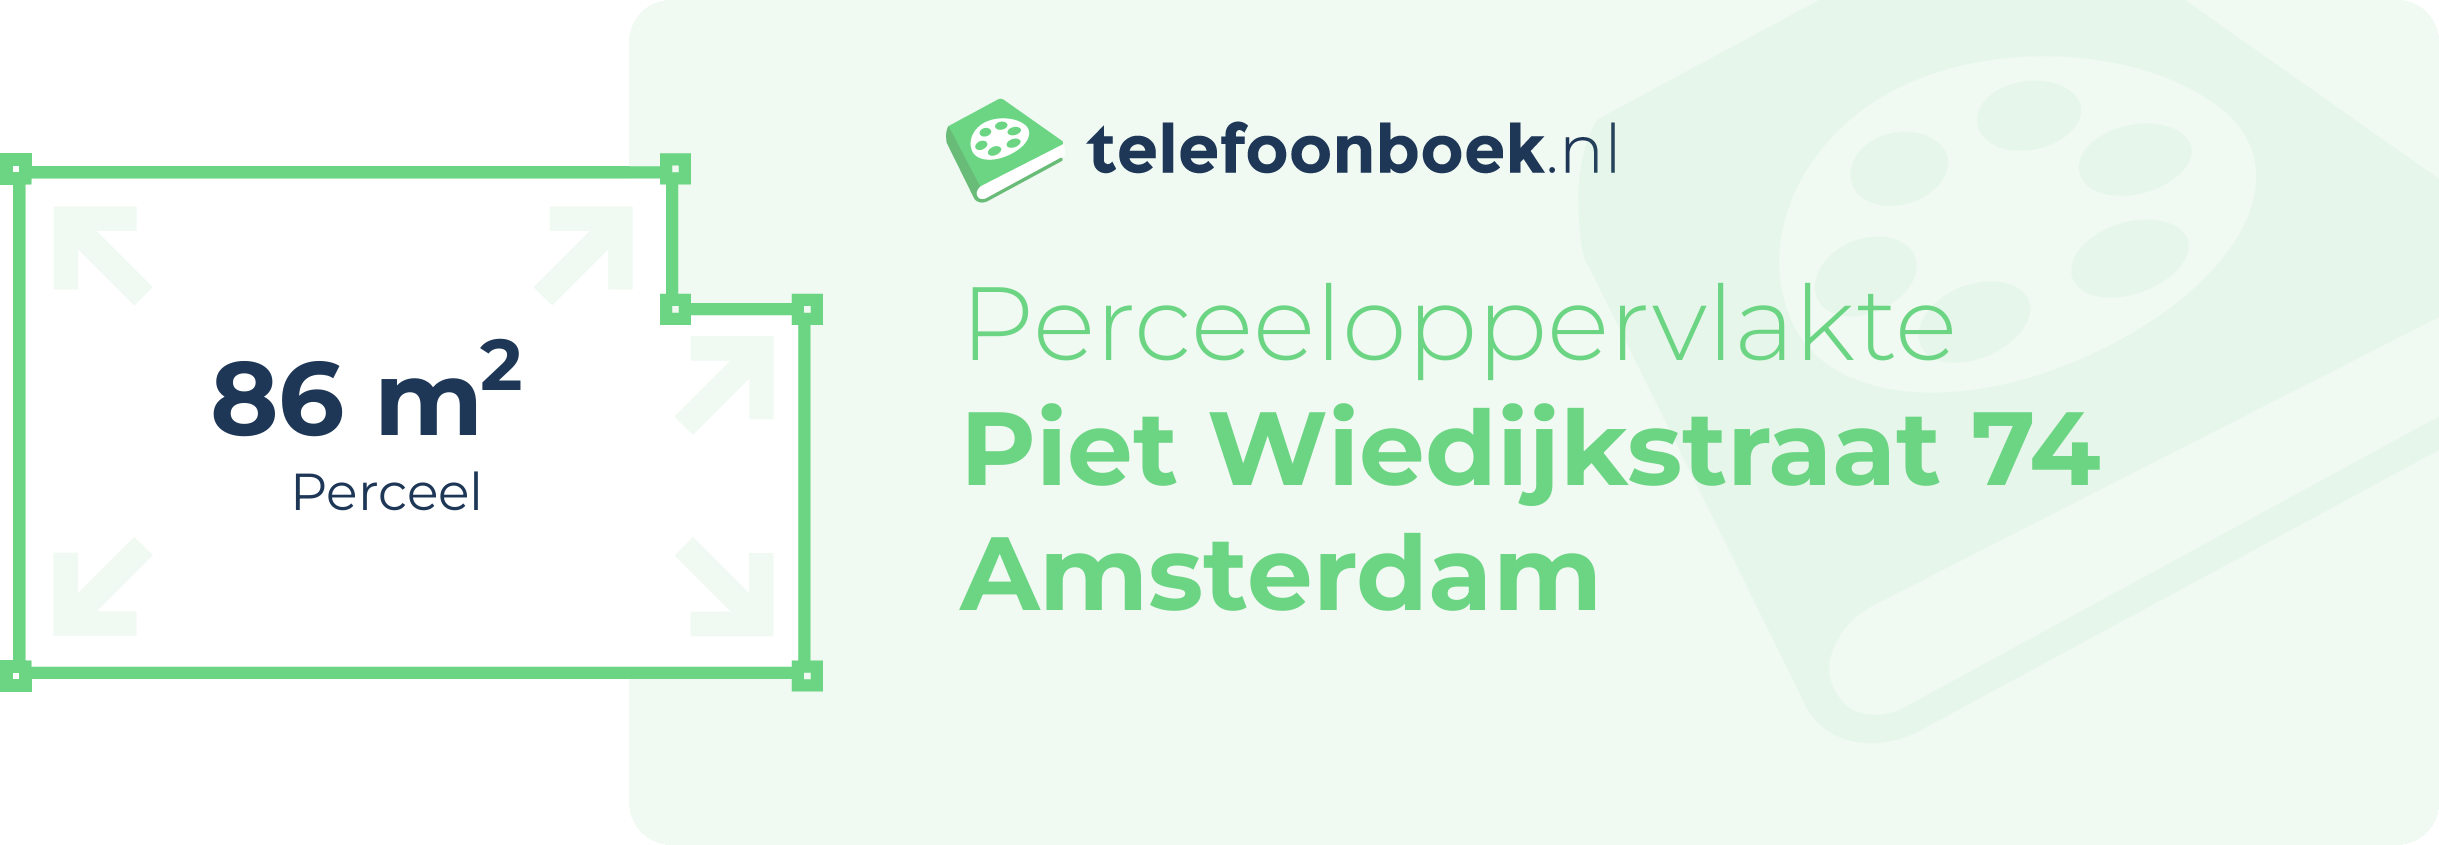 Perceeloppervlakte Piet Wiedijkstraat 74 Amsterdam